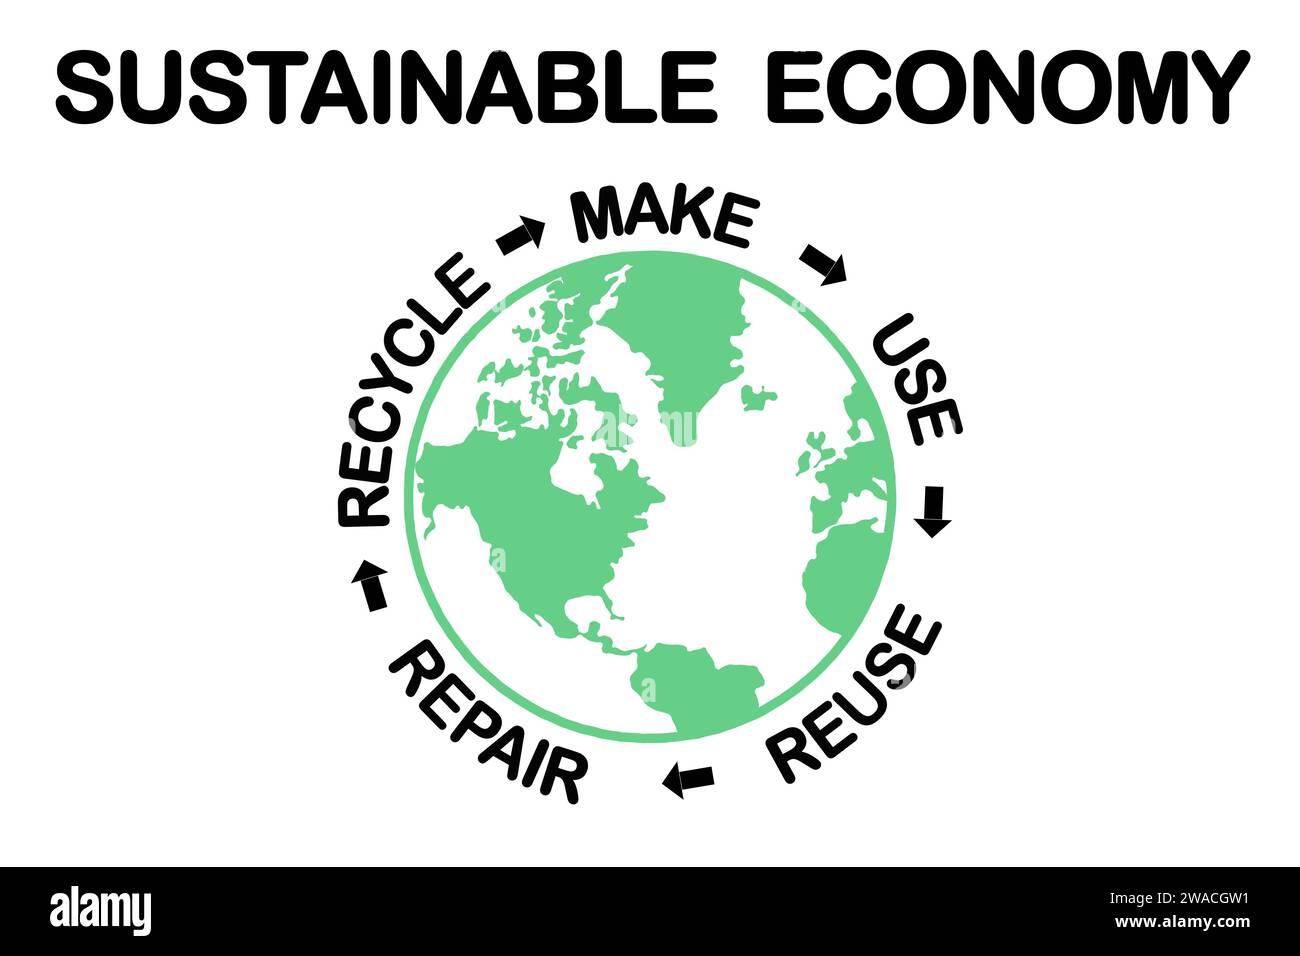 Diagramme d'économie circulaire durable, fabriquer, utiliser, réutiliser, réparer, recycler les ressources pour une consommation durable, concept écologique zéro déchet Banque D'Images